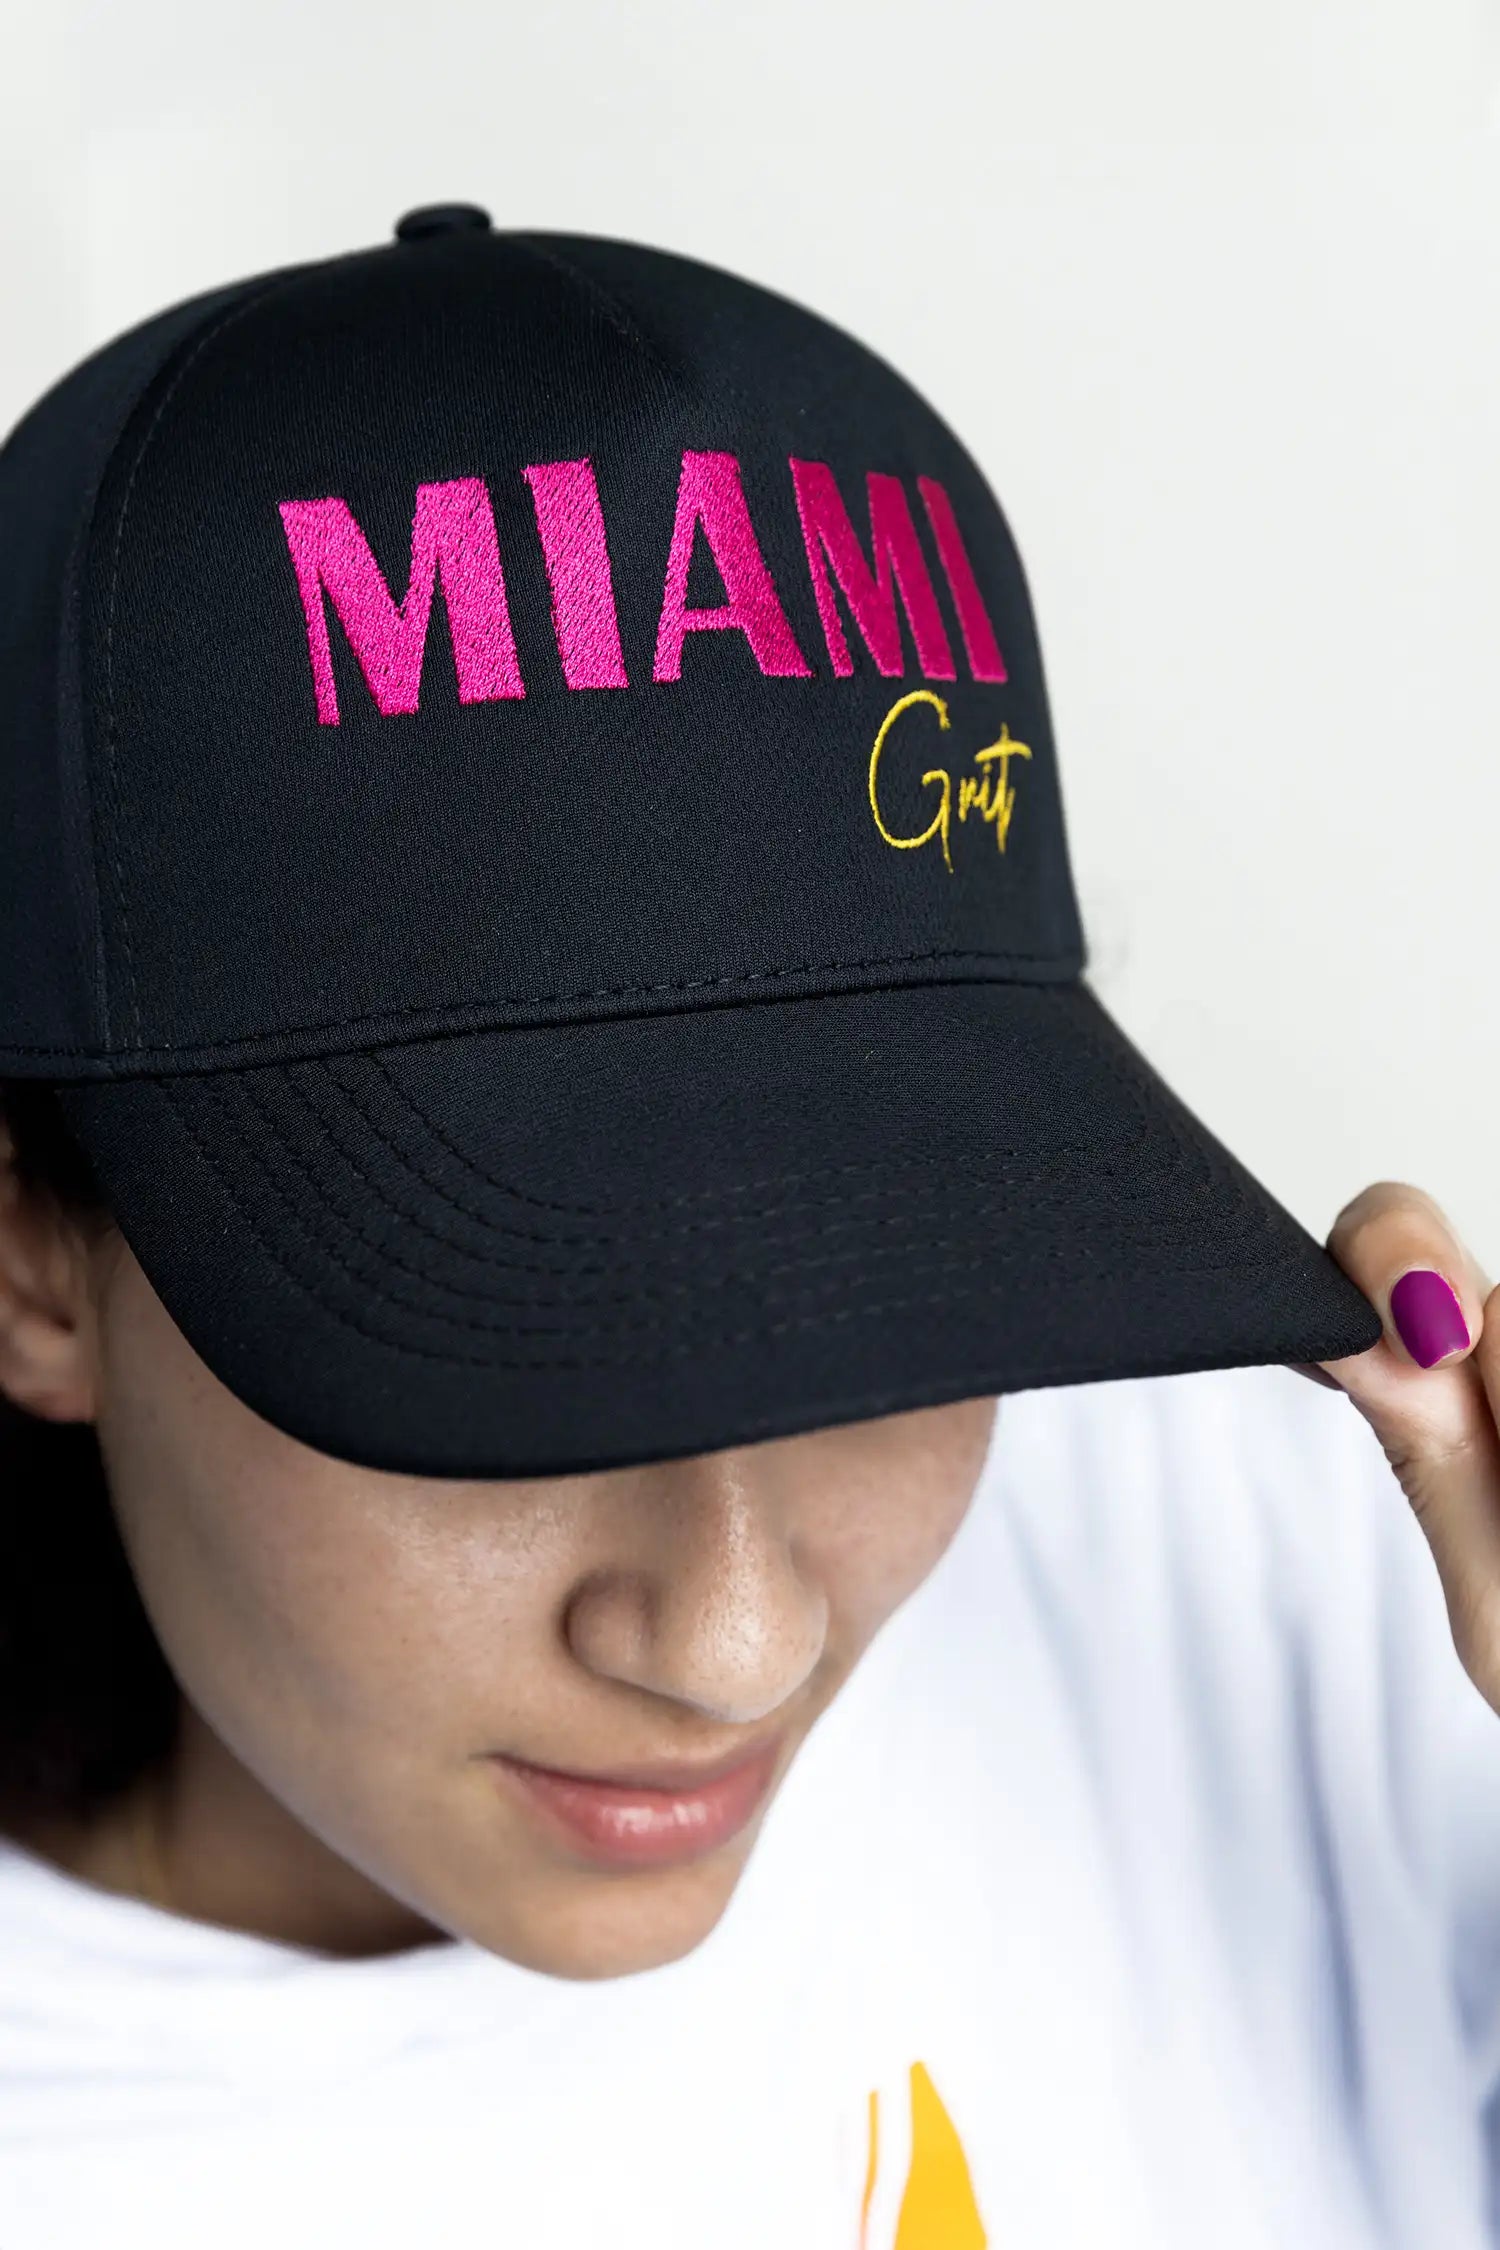 Black cap - Miami Grit